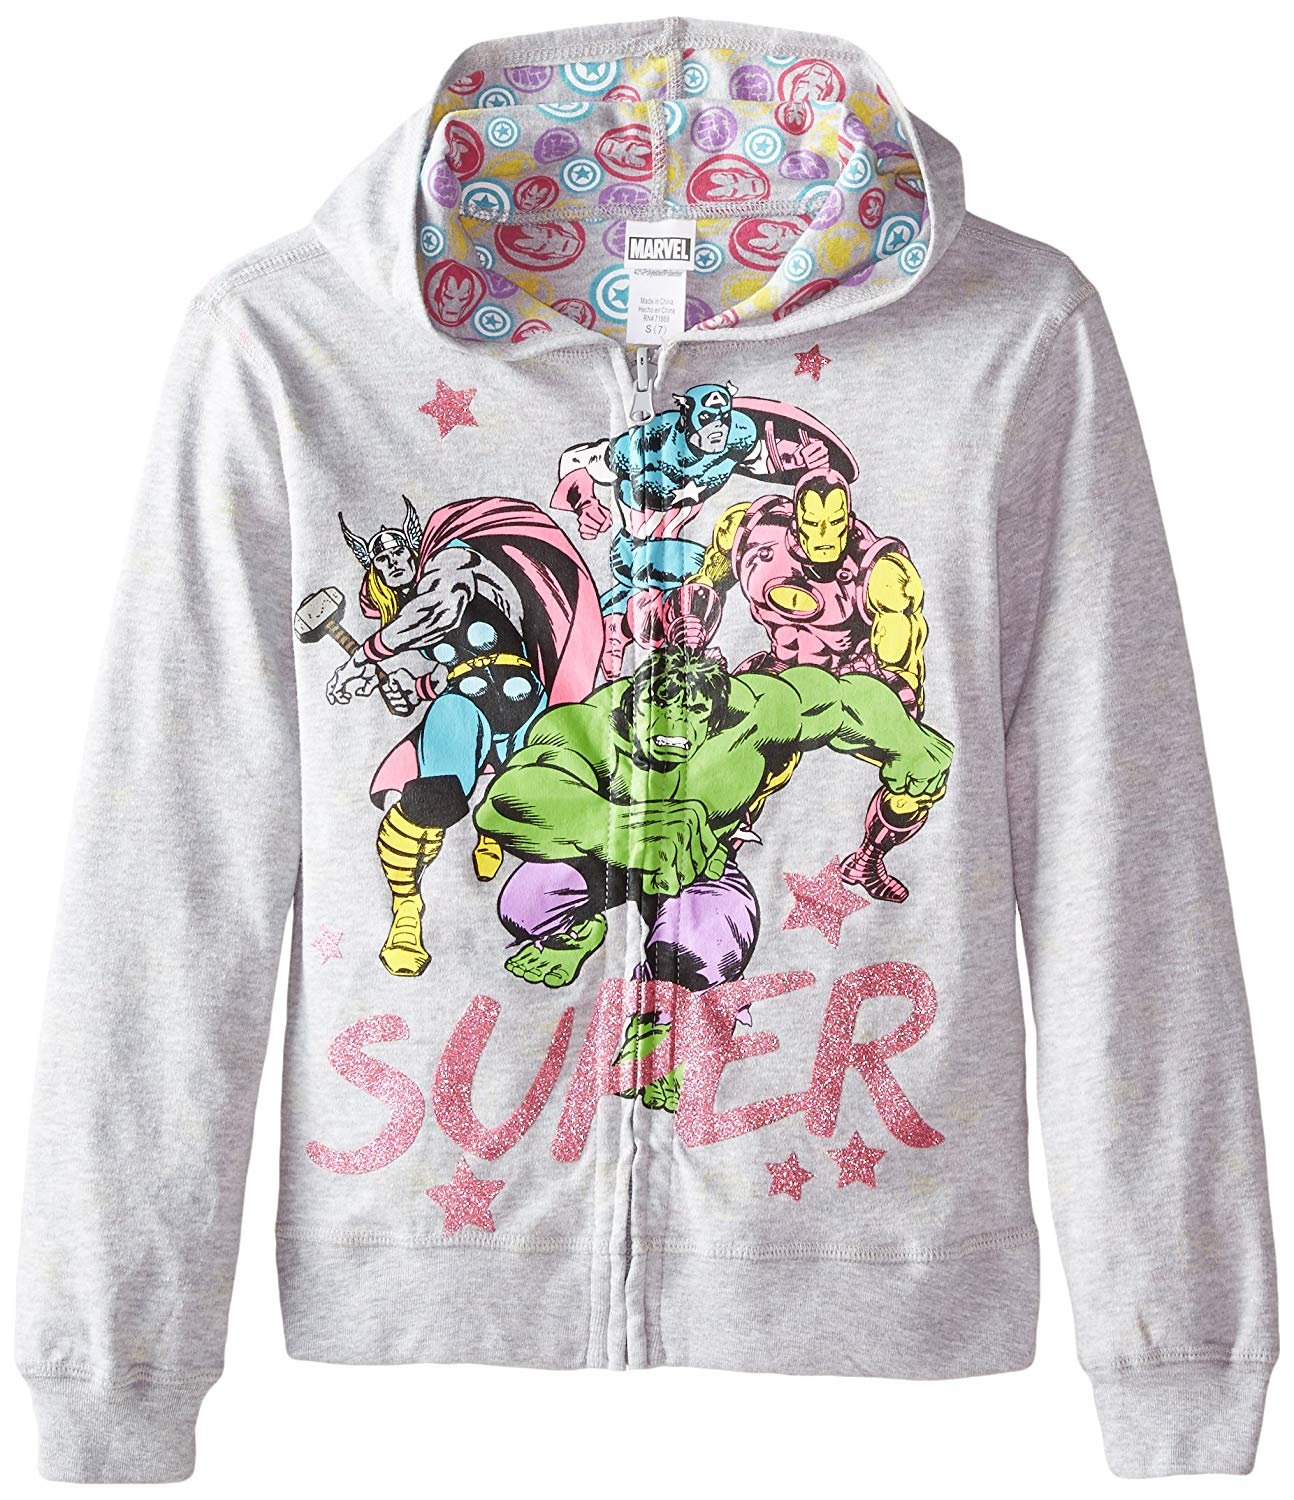 Marvel Girls' Avengers Zipup hoodie featuring reversible